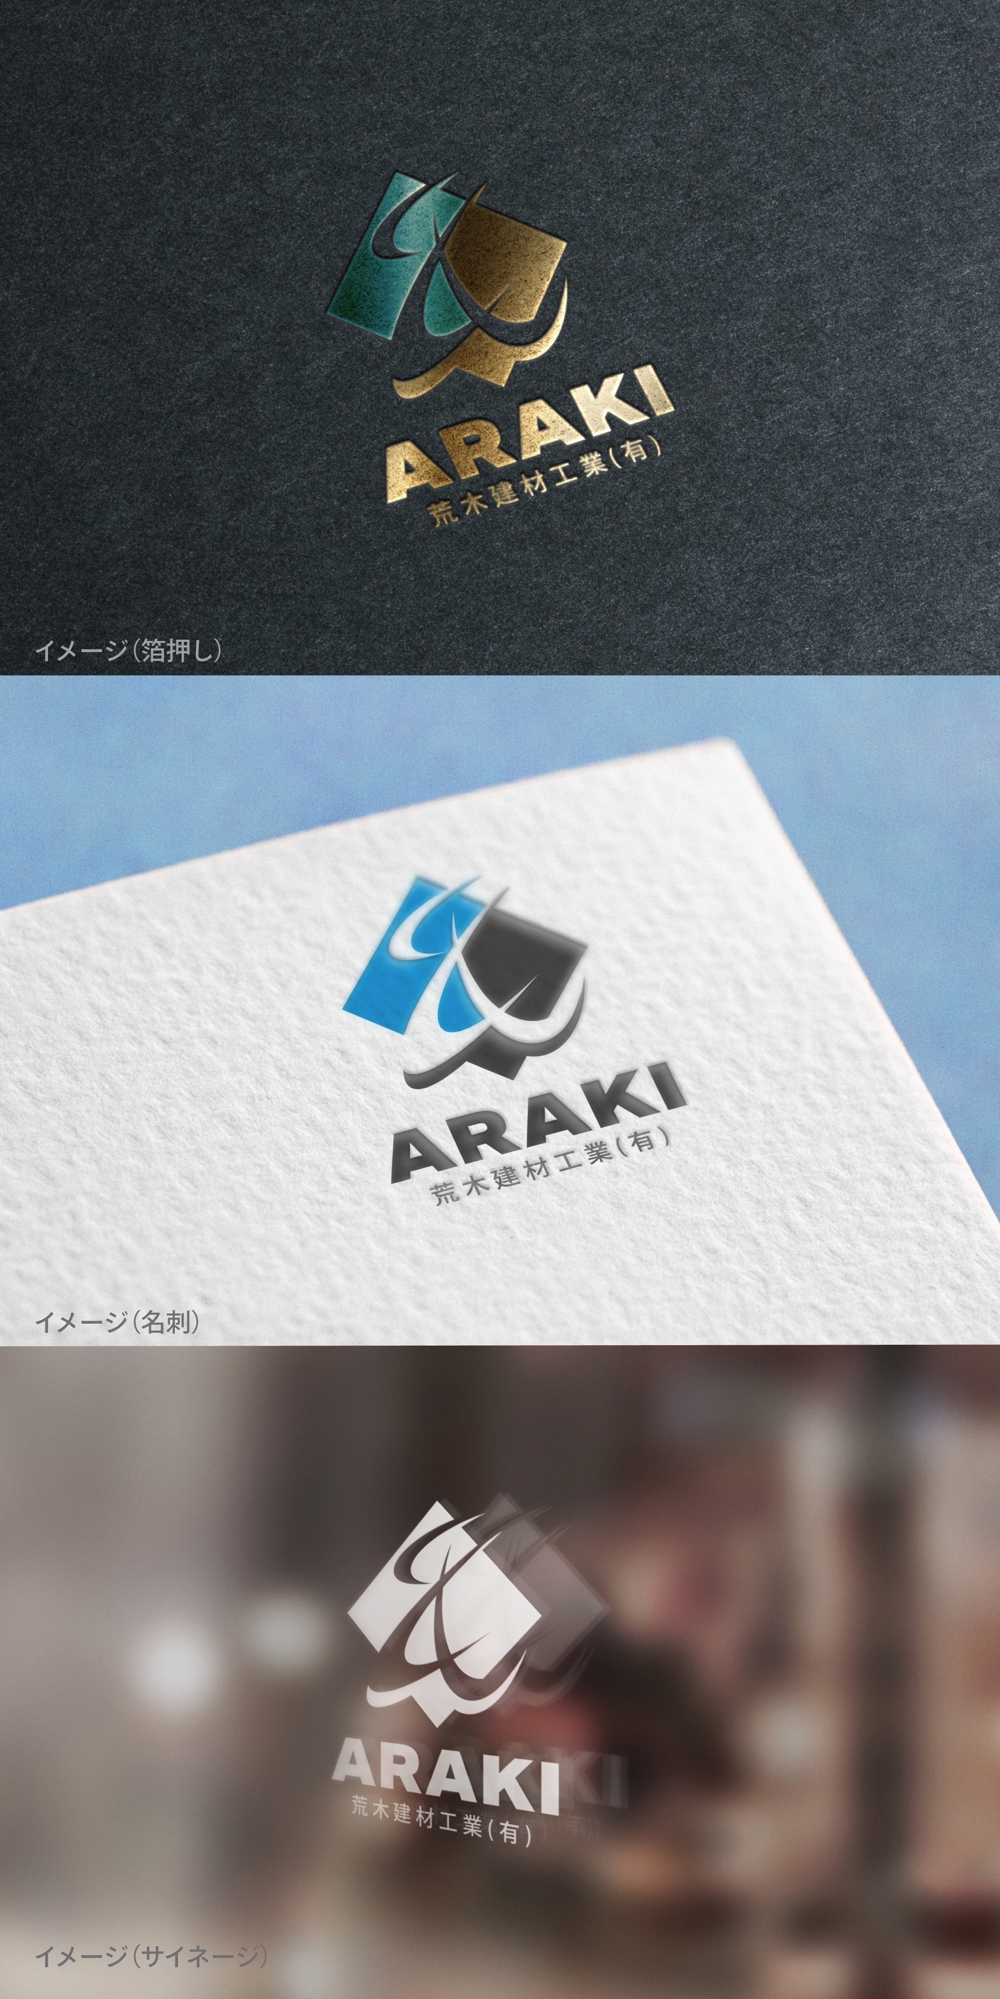 ARAKI_logo01_01.jpg